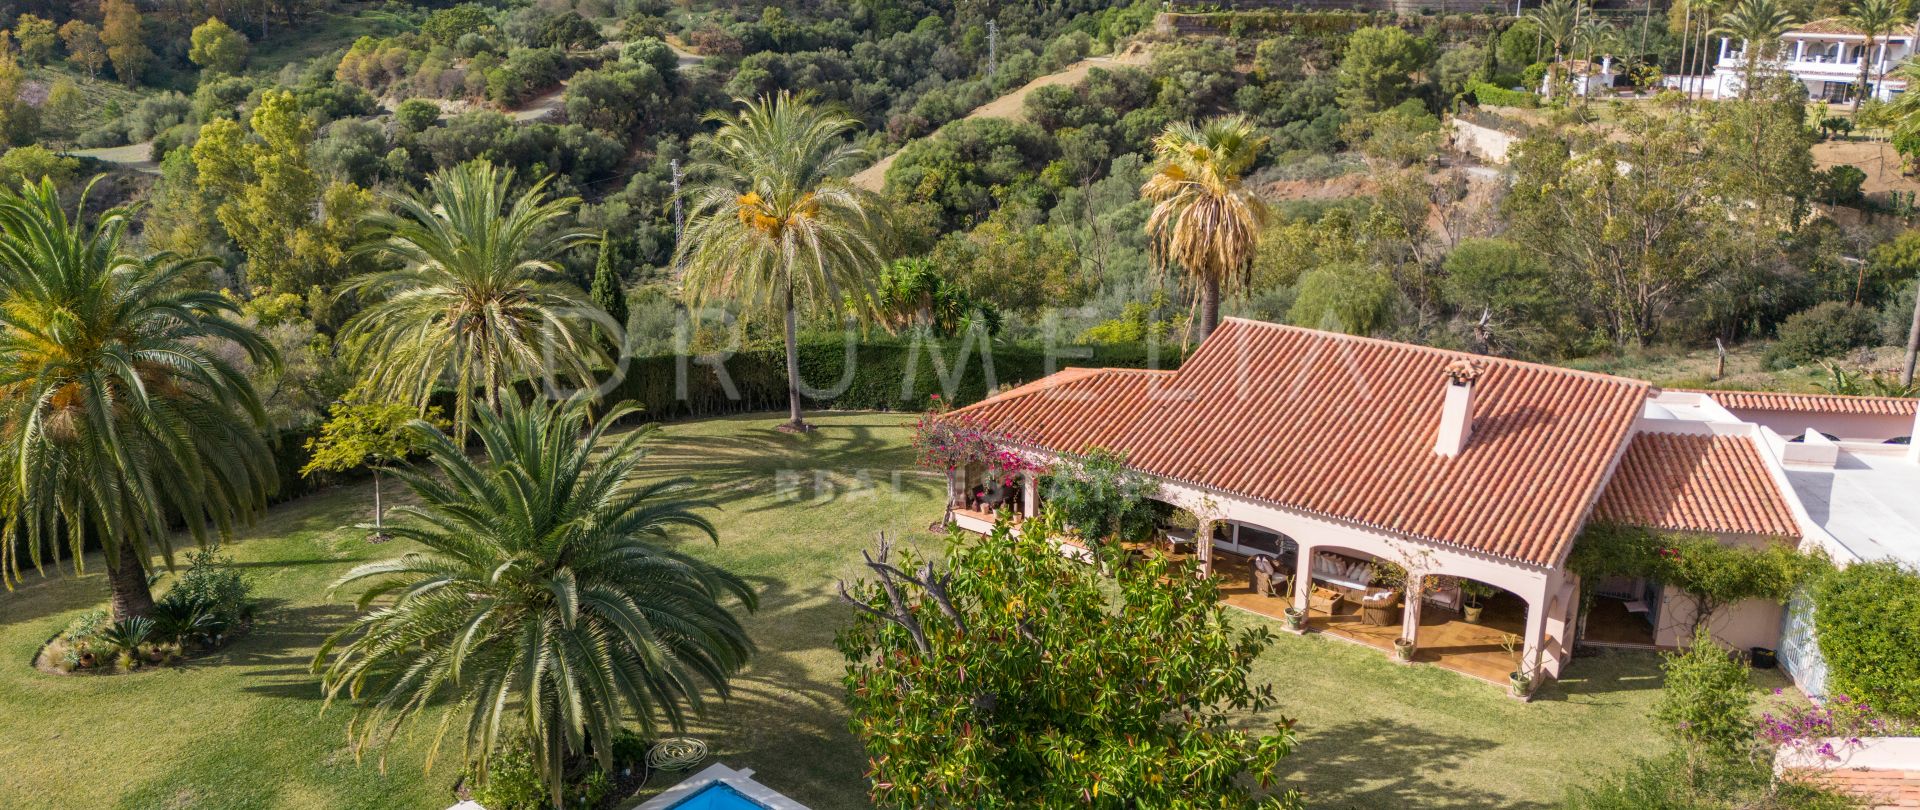 Full av andalusisk sjarm, villa til salgs i vakre Fuente del Espanto, Benahavis